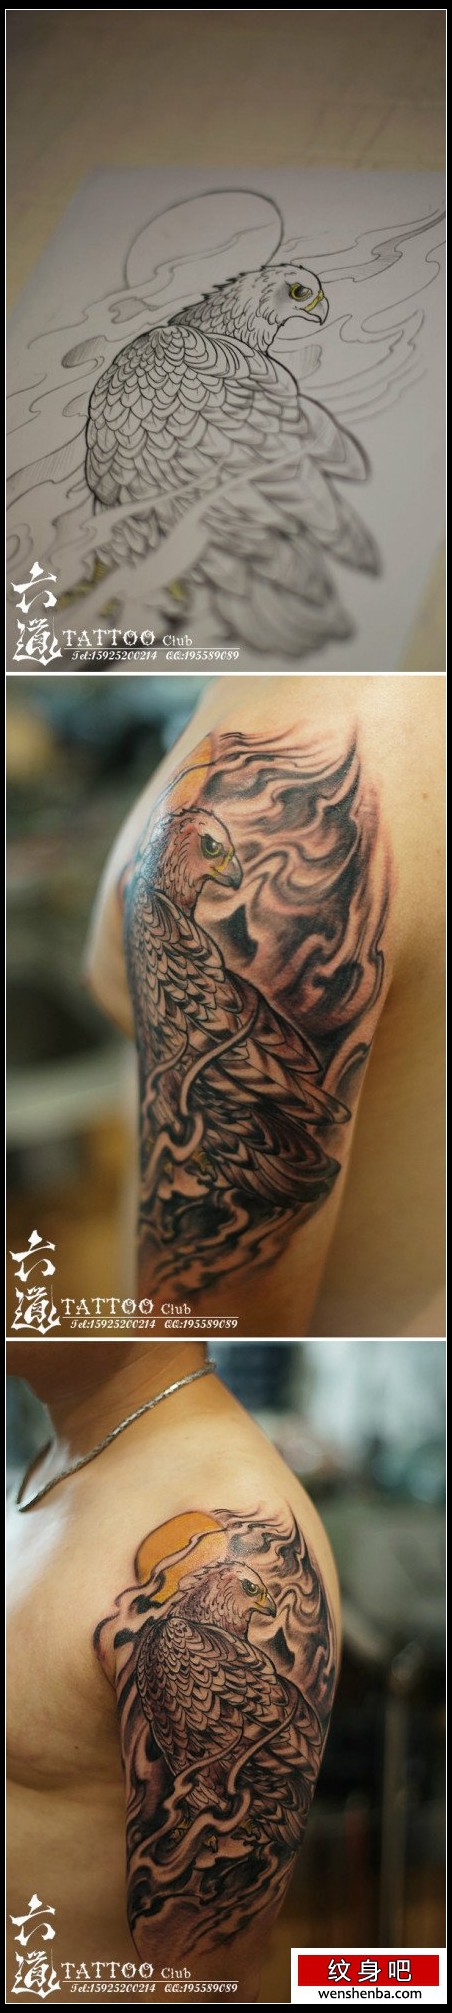 手臂时髦的一枚黑灰老鹰纹身